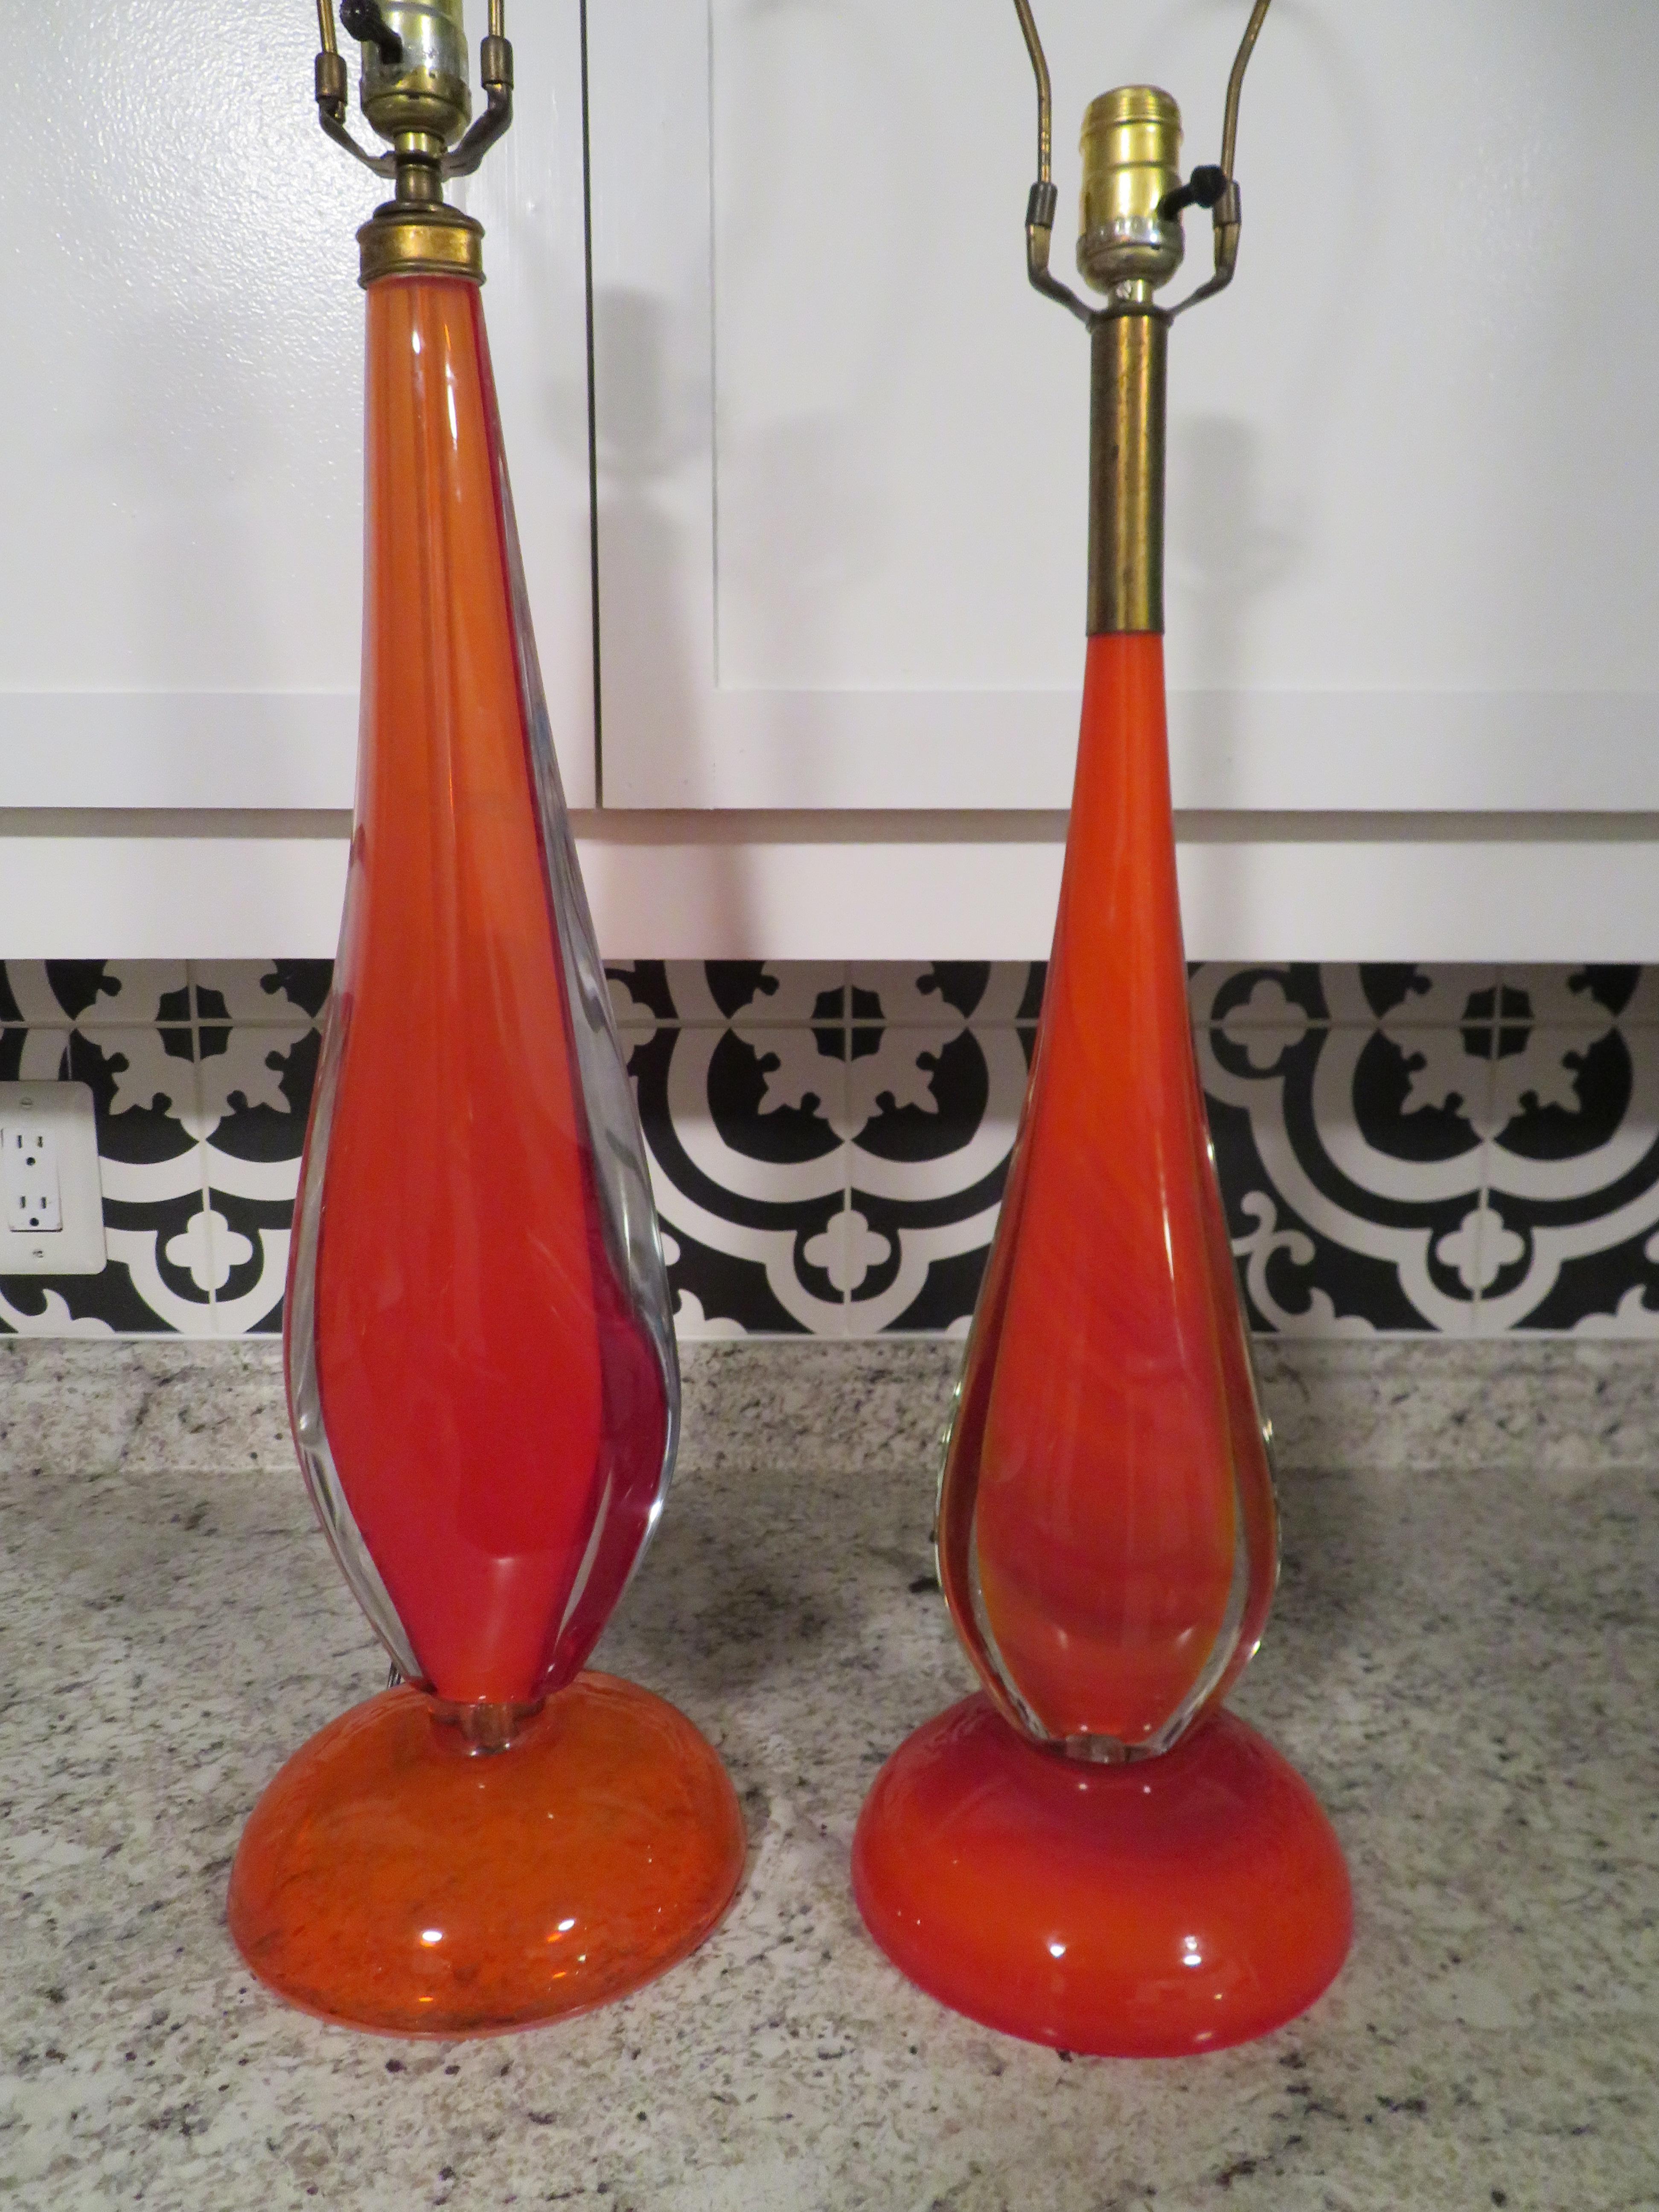 Wunderschönes Paar orangefarbener Muranolampen von Flavio Poli. Die Lampen haben zwei verschiedene Größen, aber das gefällt mir so gut an ihnen - sie können im selben Raum, aber auf unterschiedlich hohen Tischen verwendet werden. Diese heiße